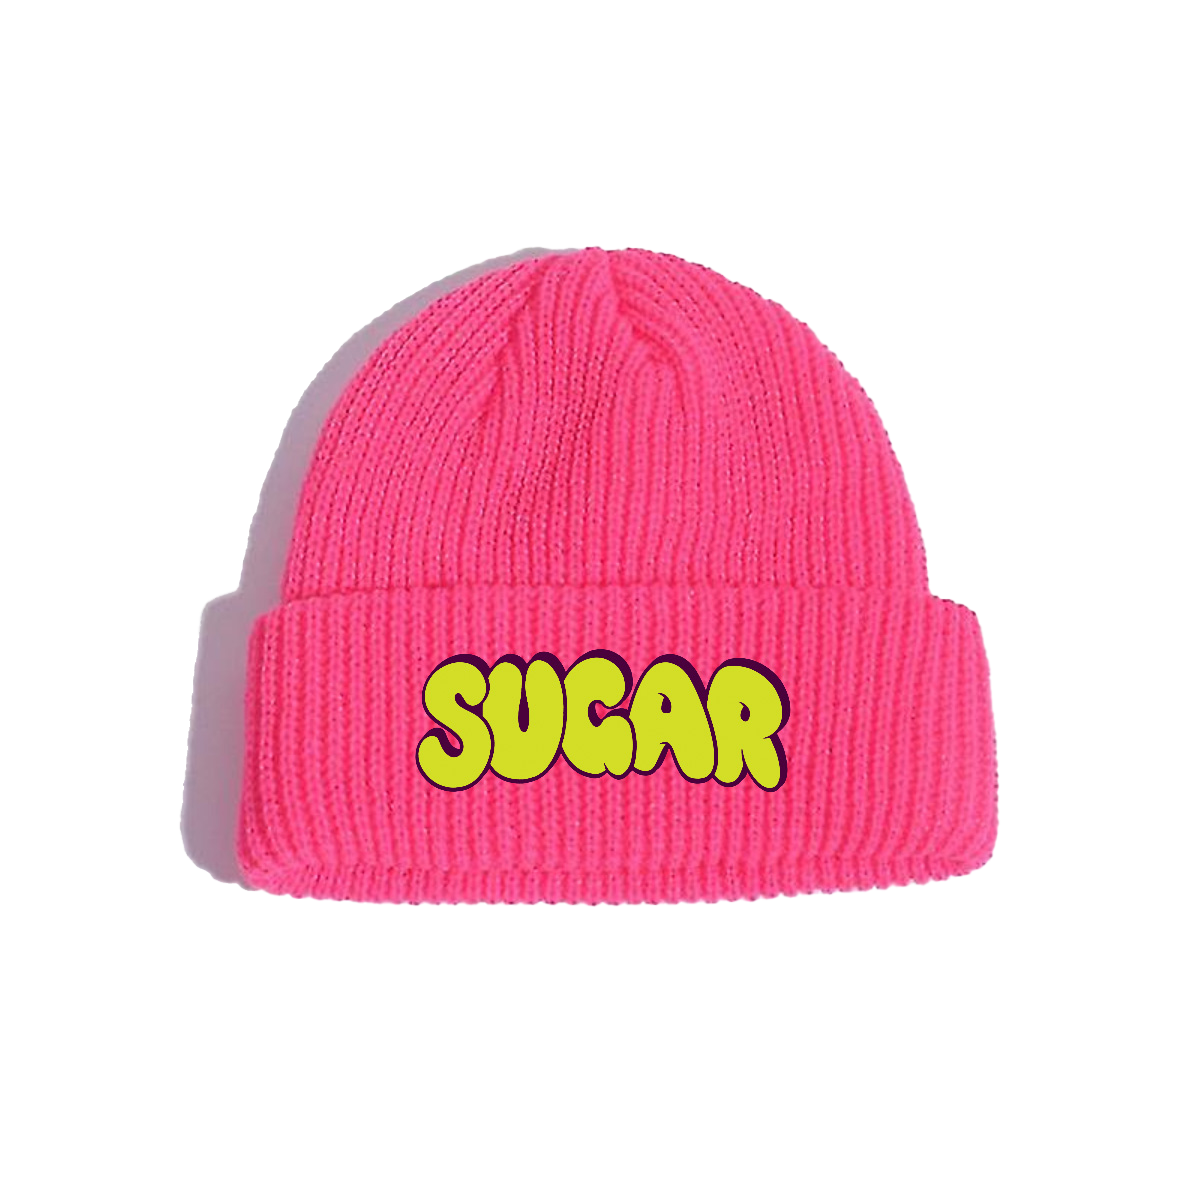 Sugar | Pink Beanie